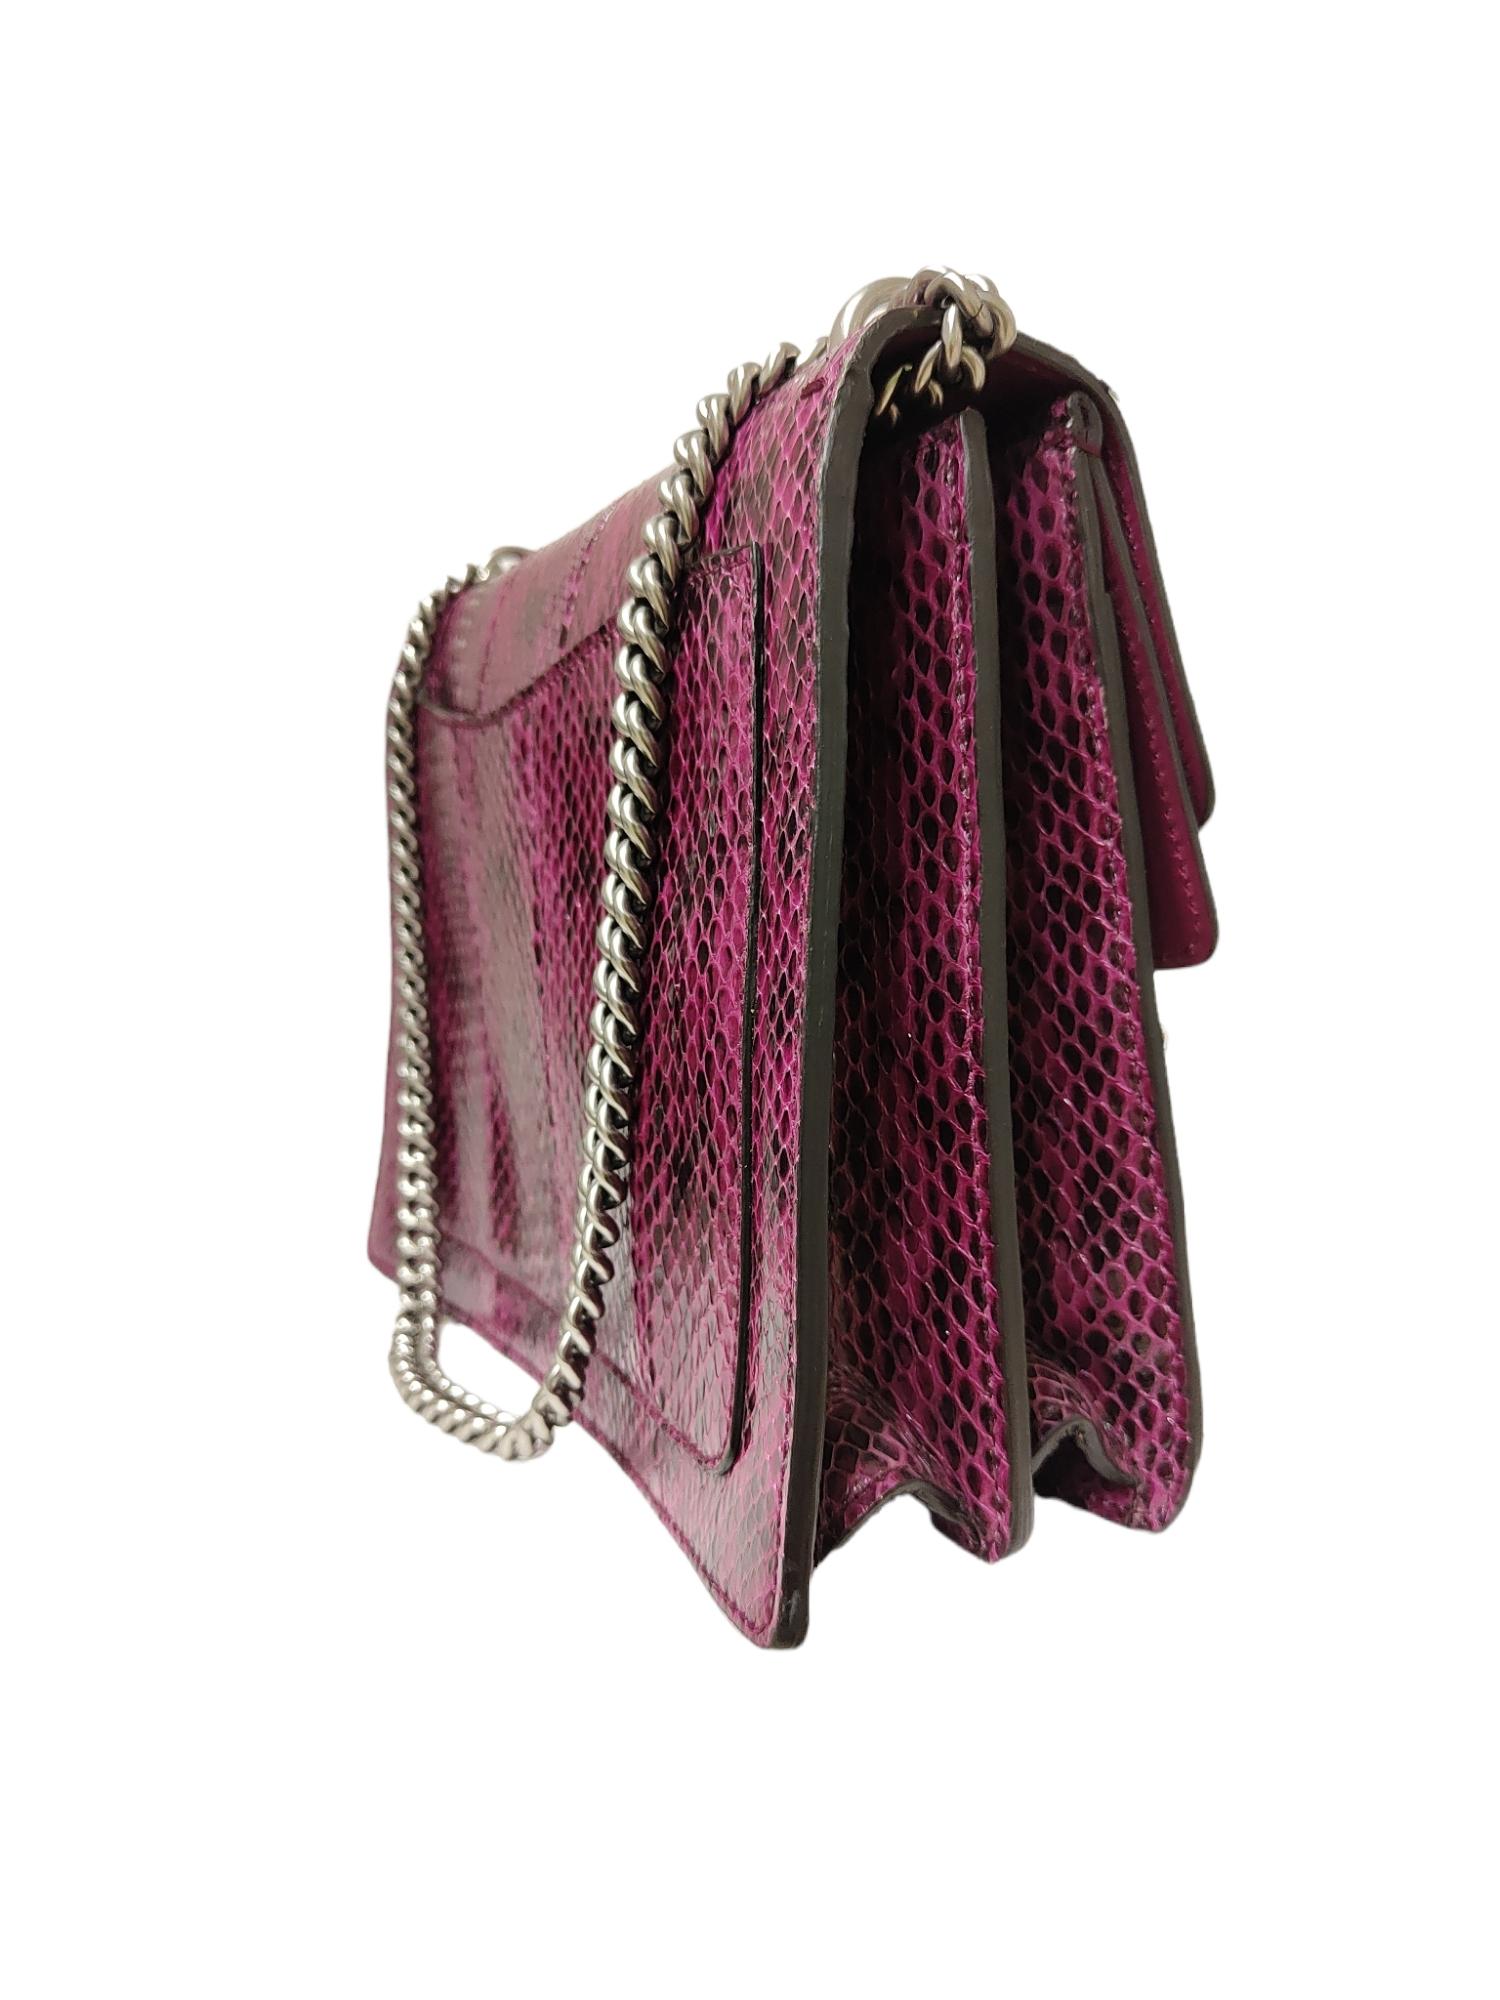 Women's or Men's Gucci Limited Edition python skin Dionysus shoulder bag